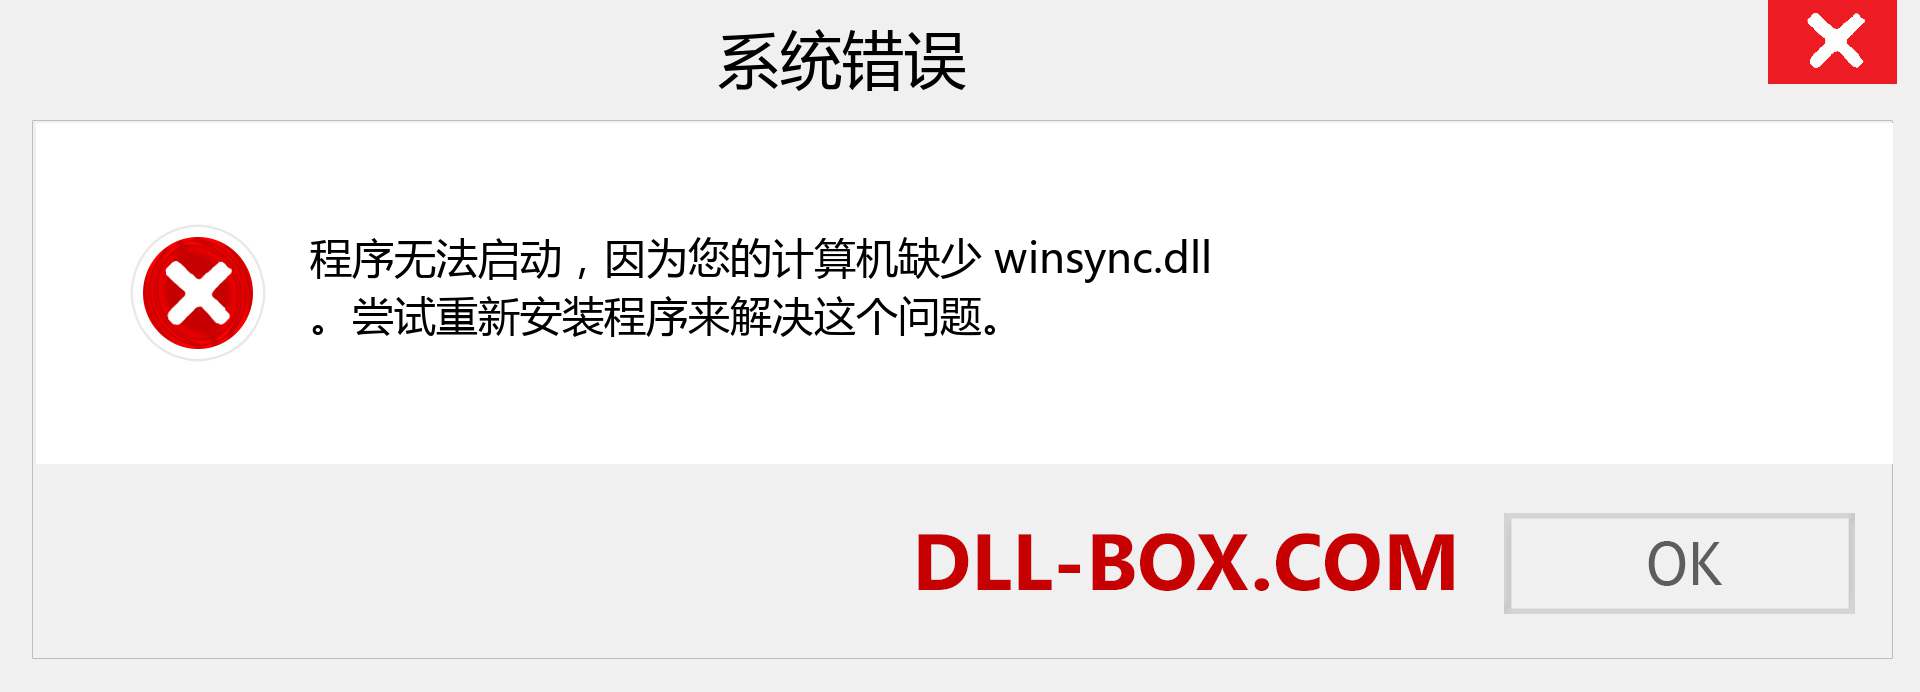 winsync.dll 文件丢失？。 适用于 Windows 7、8、10 的下载 - 修复 Windows、照片、图像上的 winsync dll 丢失错误